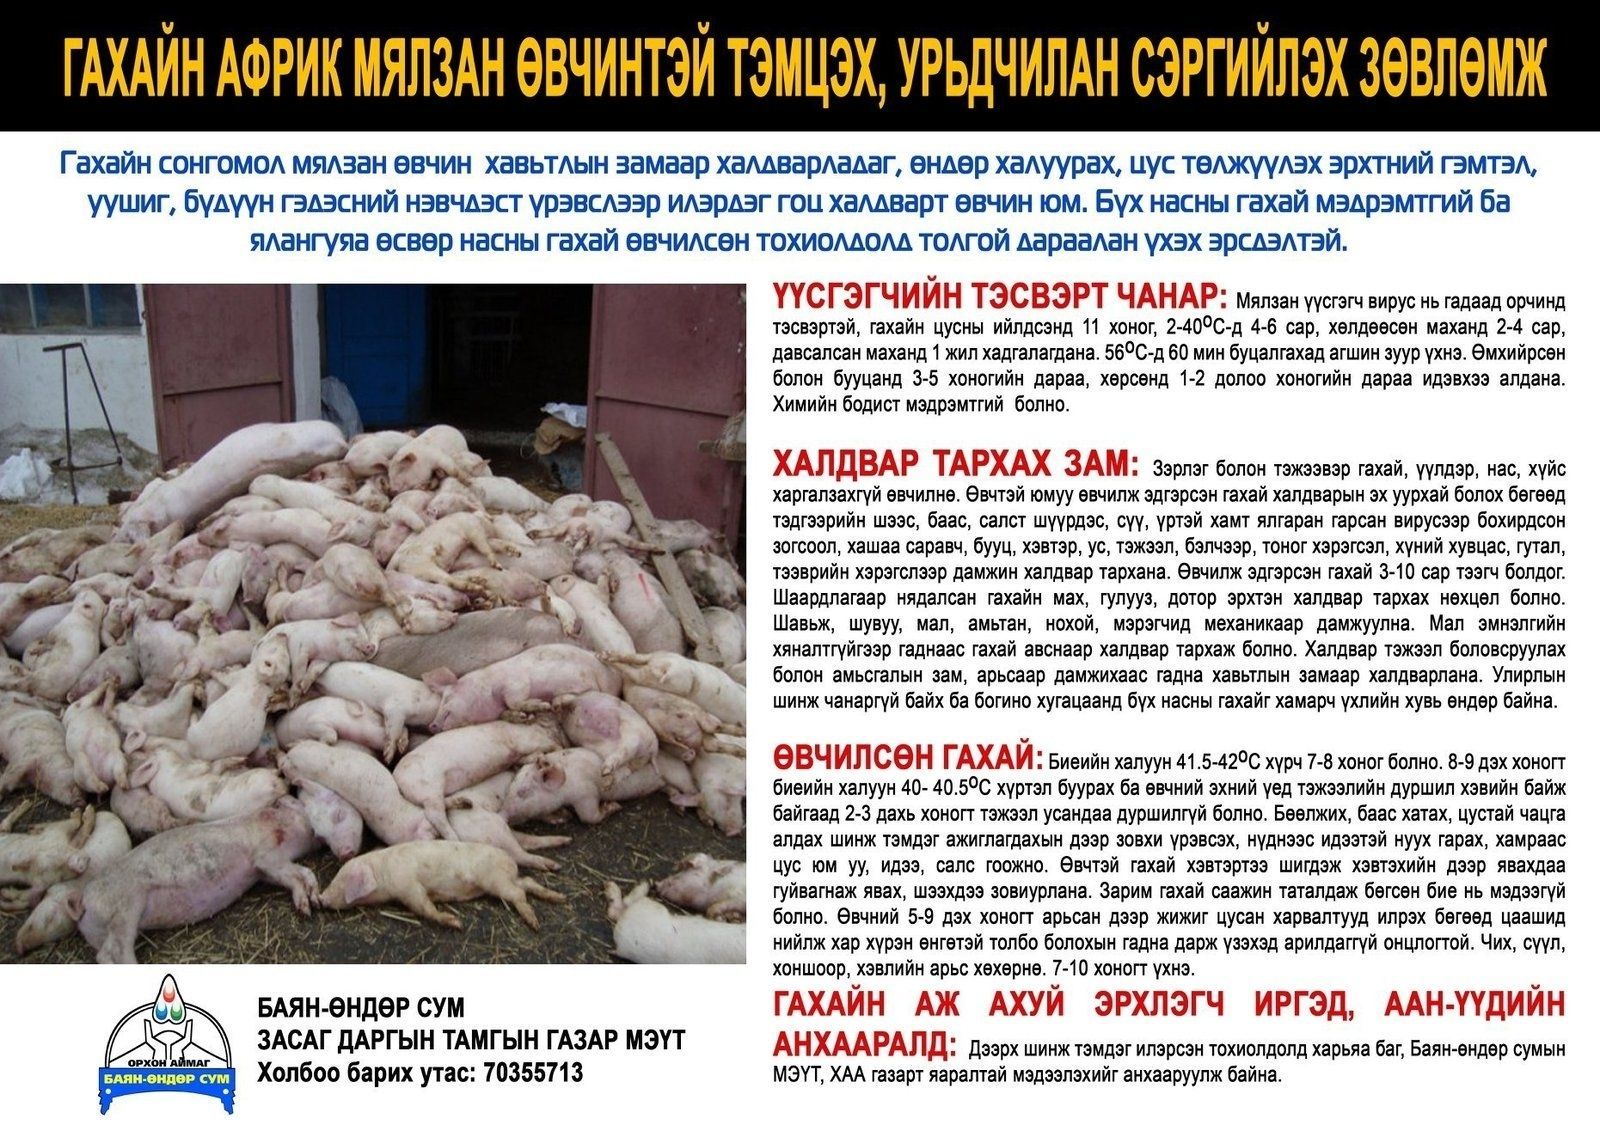 “돼지에게 발병한 질병은 신종 질병으로 밝혀져 14일간 유통 금지”.jpg